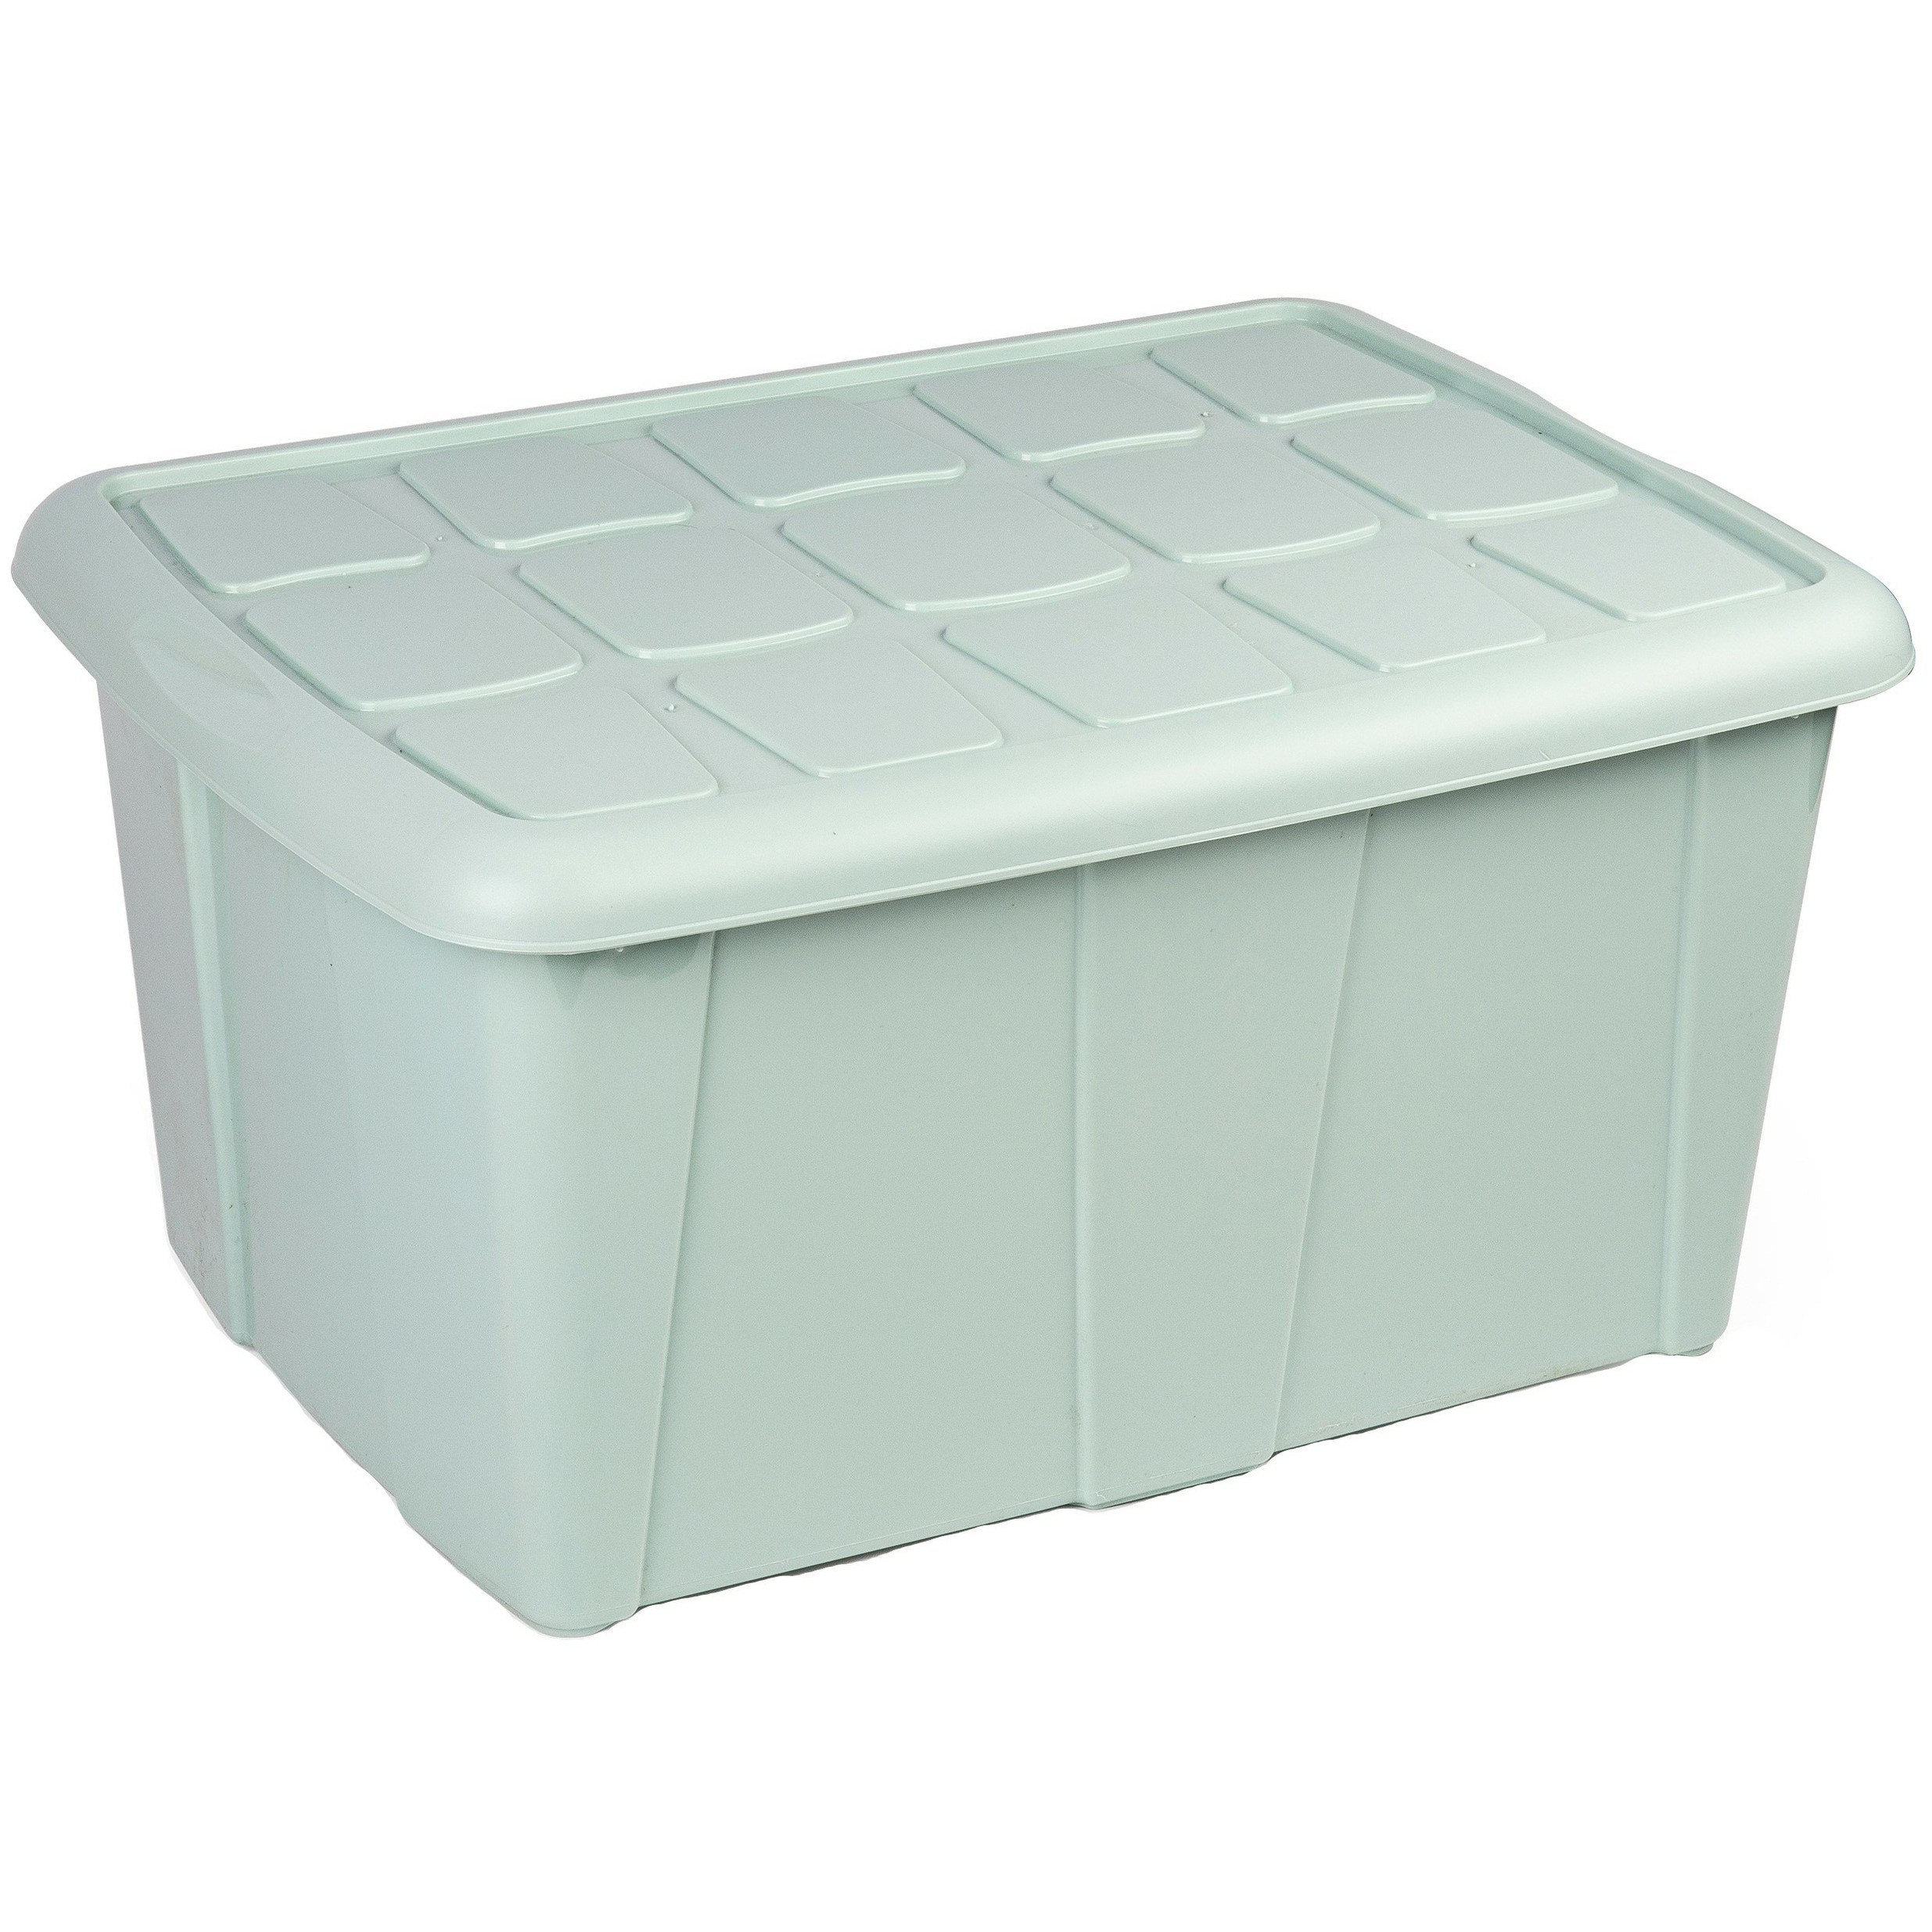 Opslagbox kist van 60 liter met deksel Mintgroen kunststof 63 x 46 x 32 cm